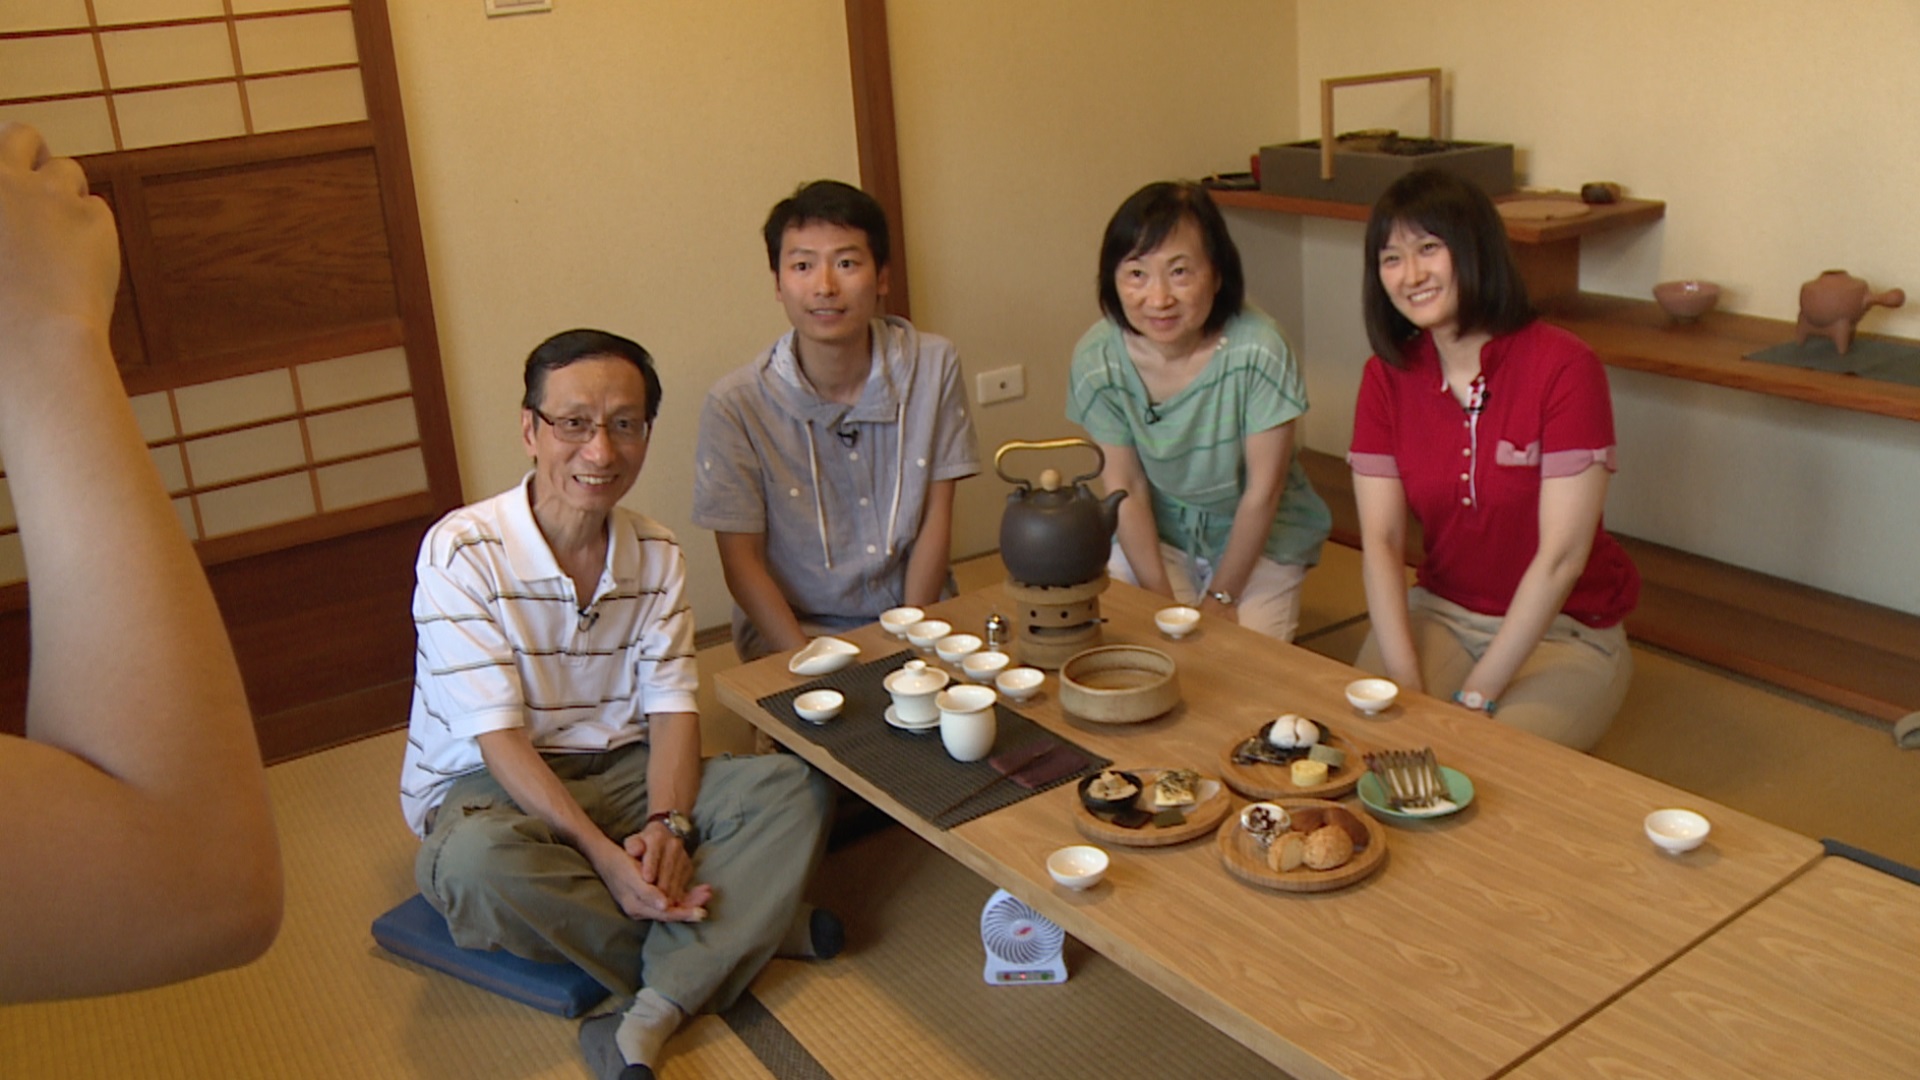 Alvin希望父母和他的日本女友Misaki能互相了解，他们在一间位于日式旧建筑物内的茶屋品茗，以日本文化展开这趟旅程。